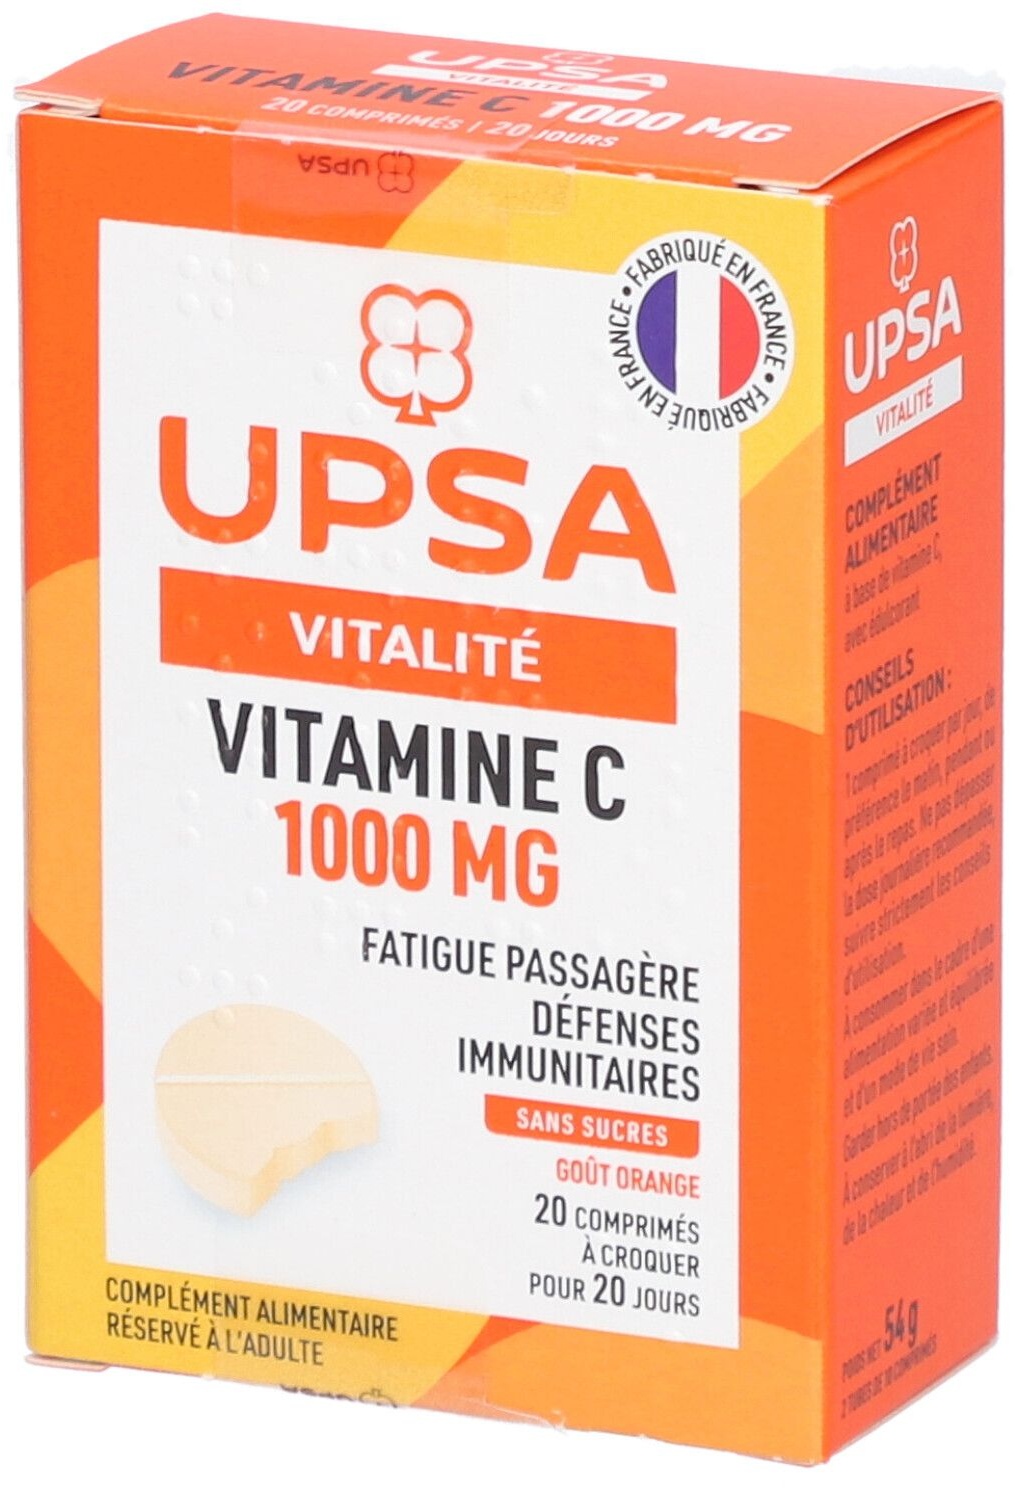 Vitamine C UPSA 1000 mg - 20 comprimés à croquer - Adulte - Complément alimentaire sans sucres, goût orange - Fatigue passagère et défenses immunitaires 20 pc(s) comprimé(s) à croquer